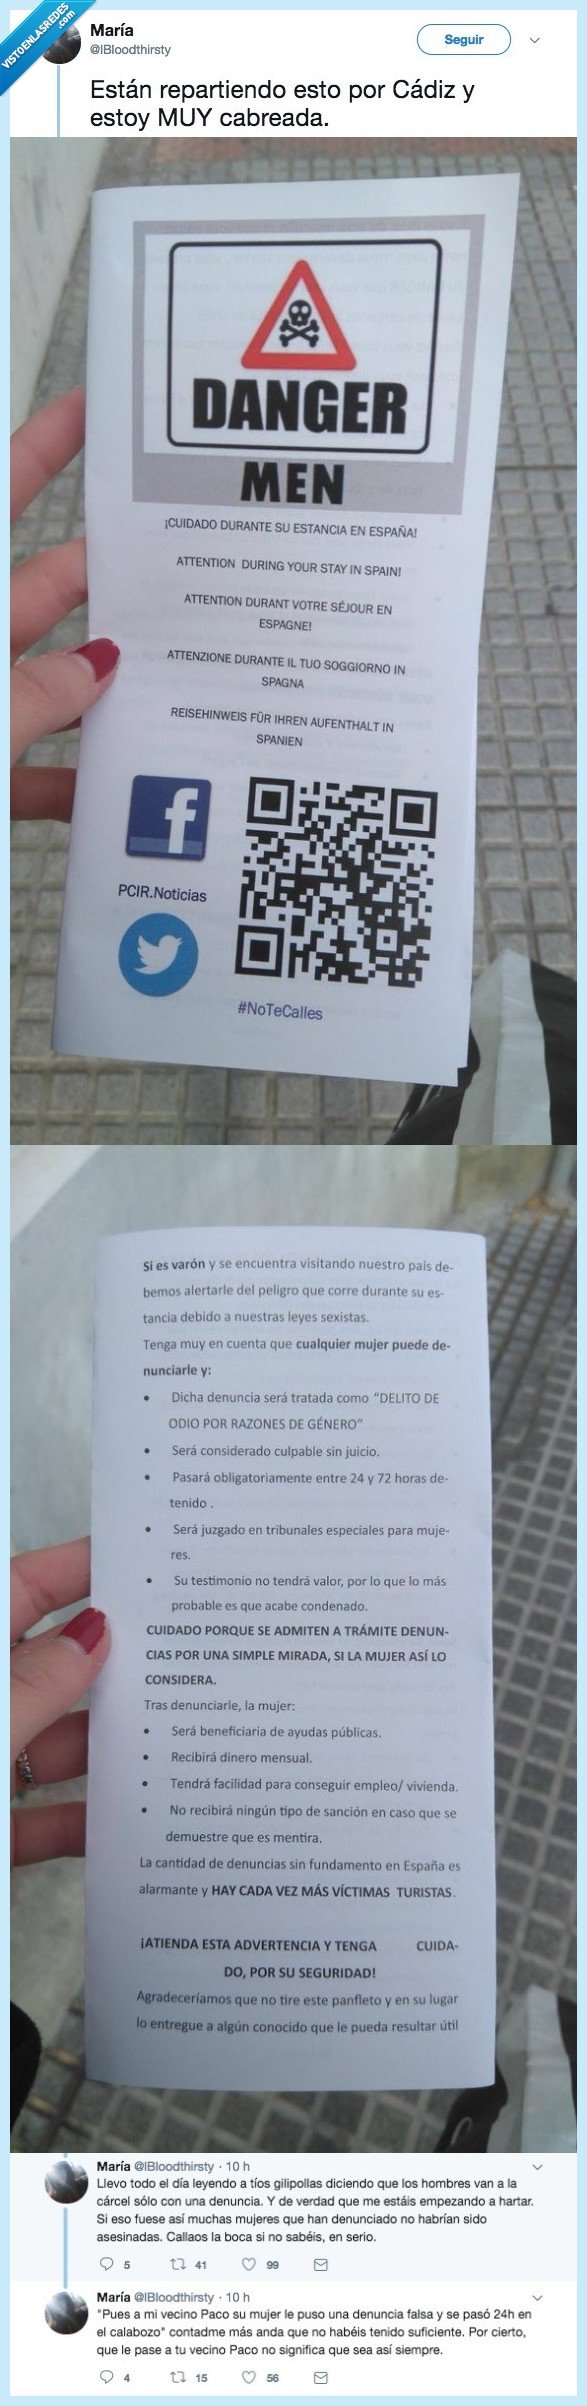 482638 - Reparten estas papeletas por Cádiz advirtiendo a los hombres de las mujeres, por @lBloodthirsty